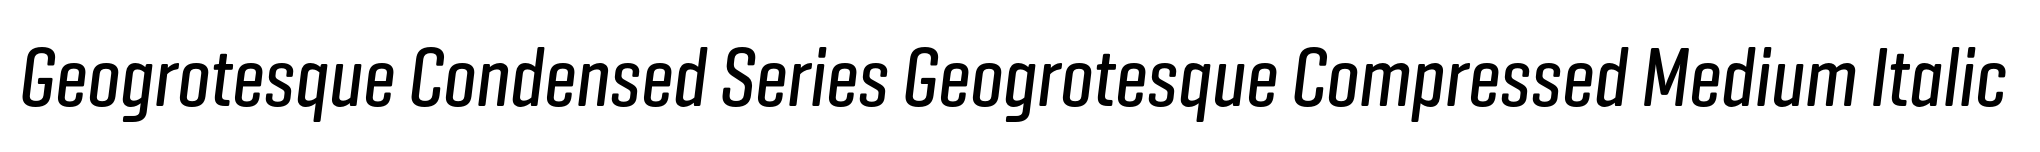 Geogrotesque Condensed Series Geogrotesque Compressed Medium Italic image